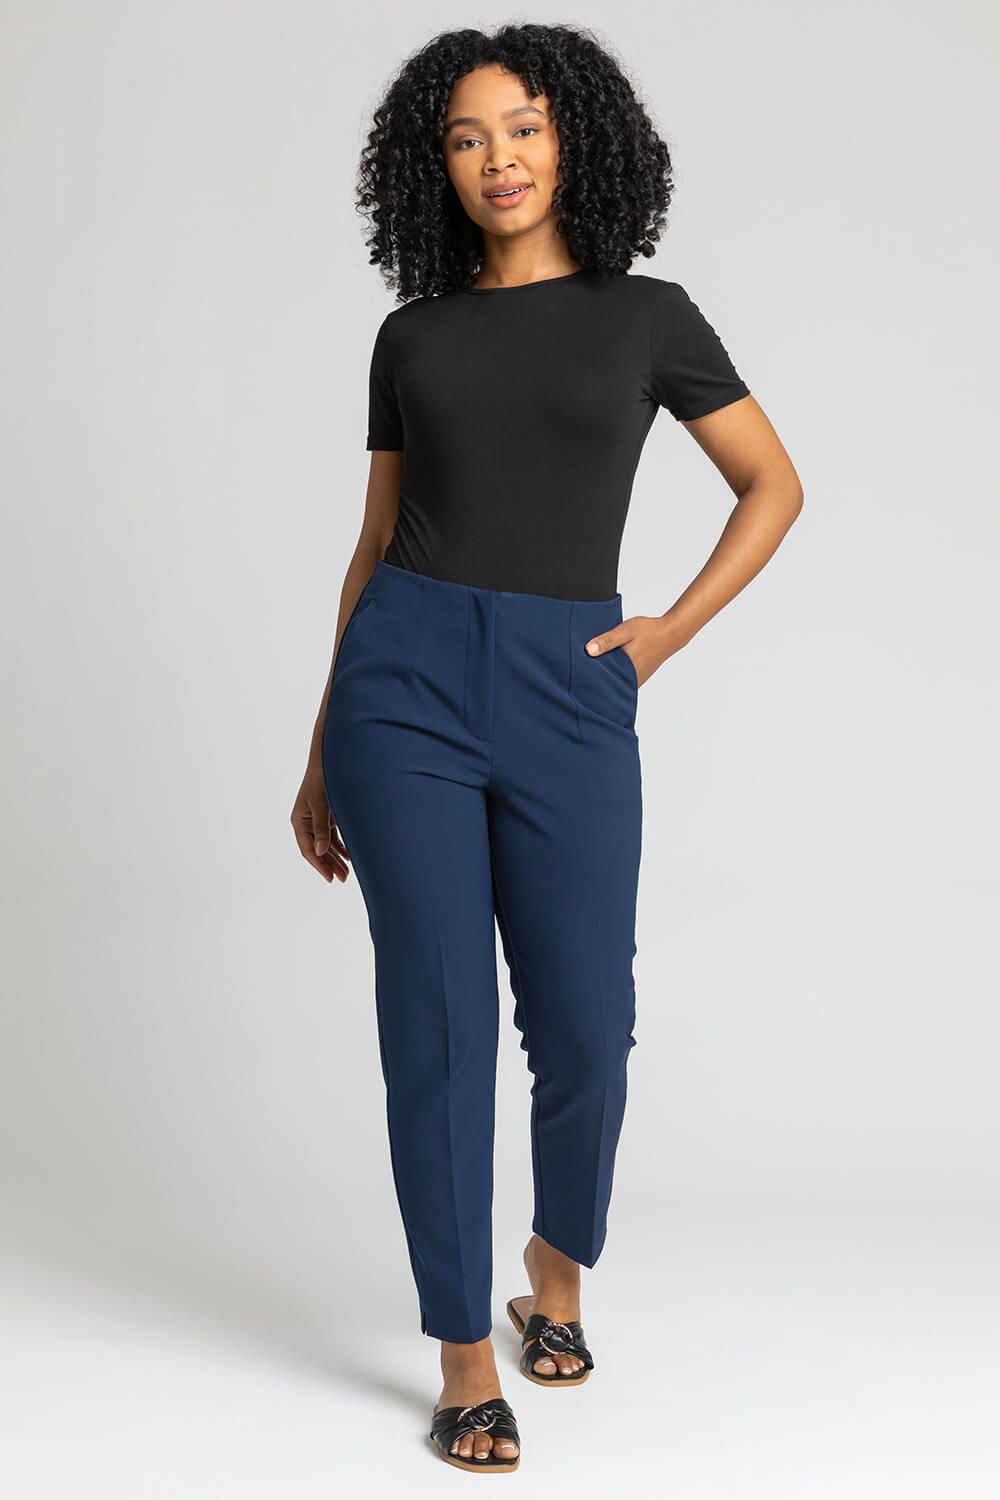 Buy Blue  Black Trousers  Pants for Men by Garcon Online  Ajiocom